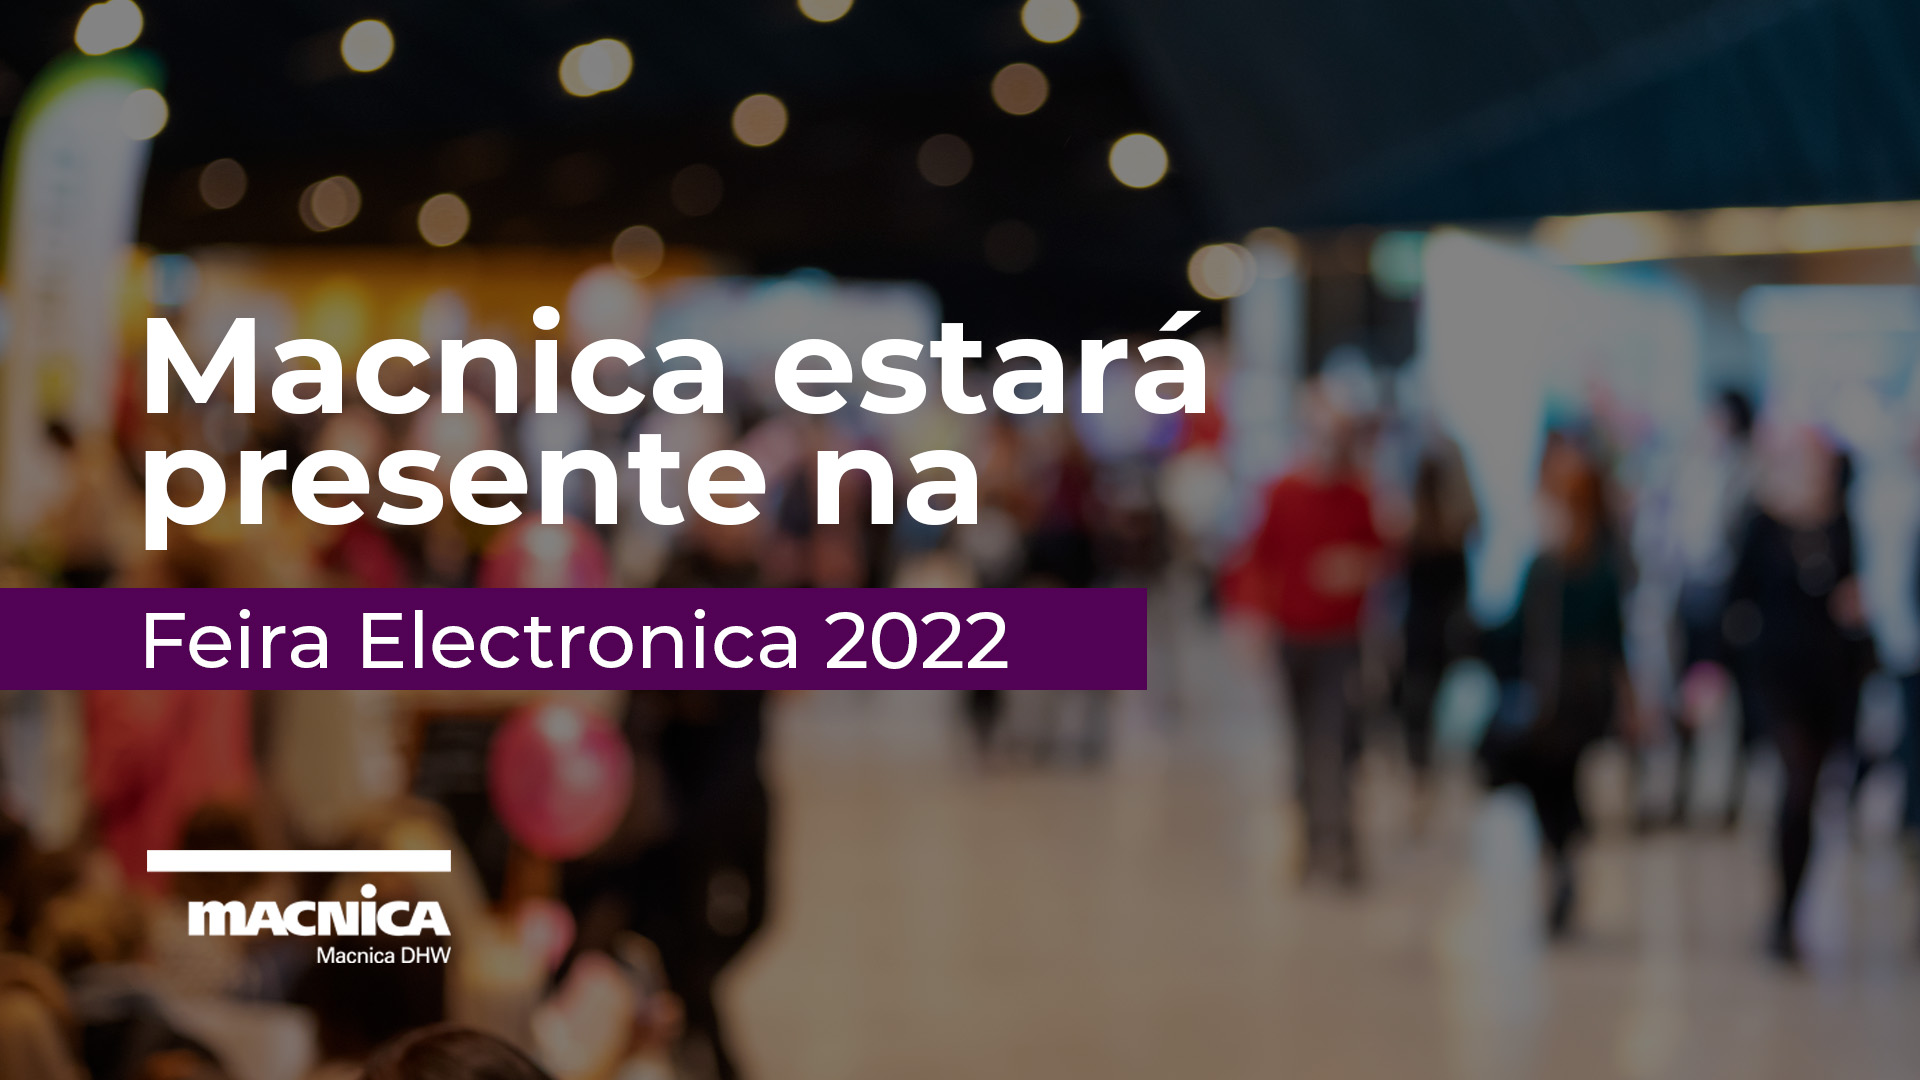 Você está visualizando atualmente Macnica estará presente na Feira Electronica 2022